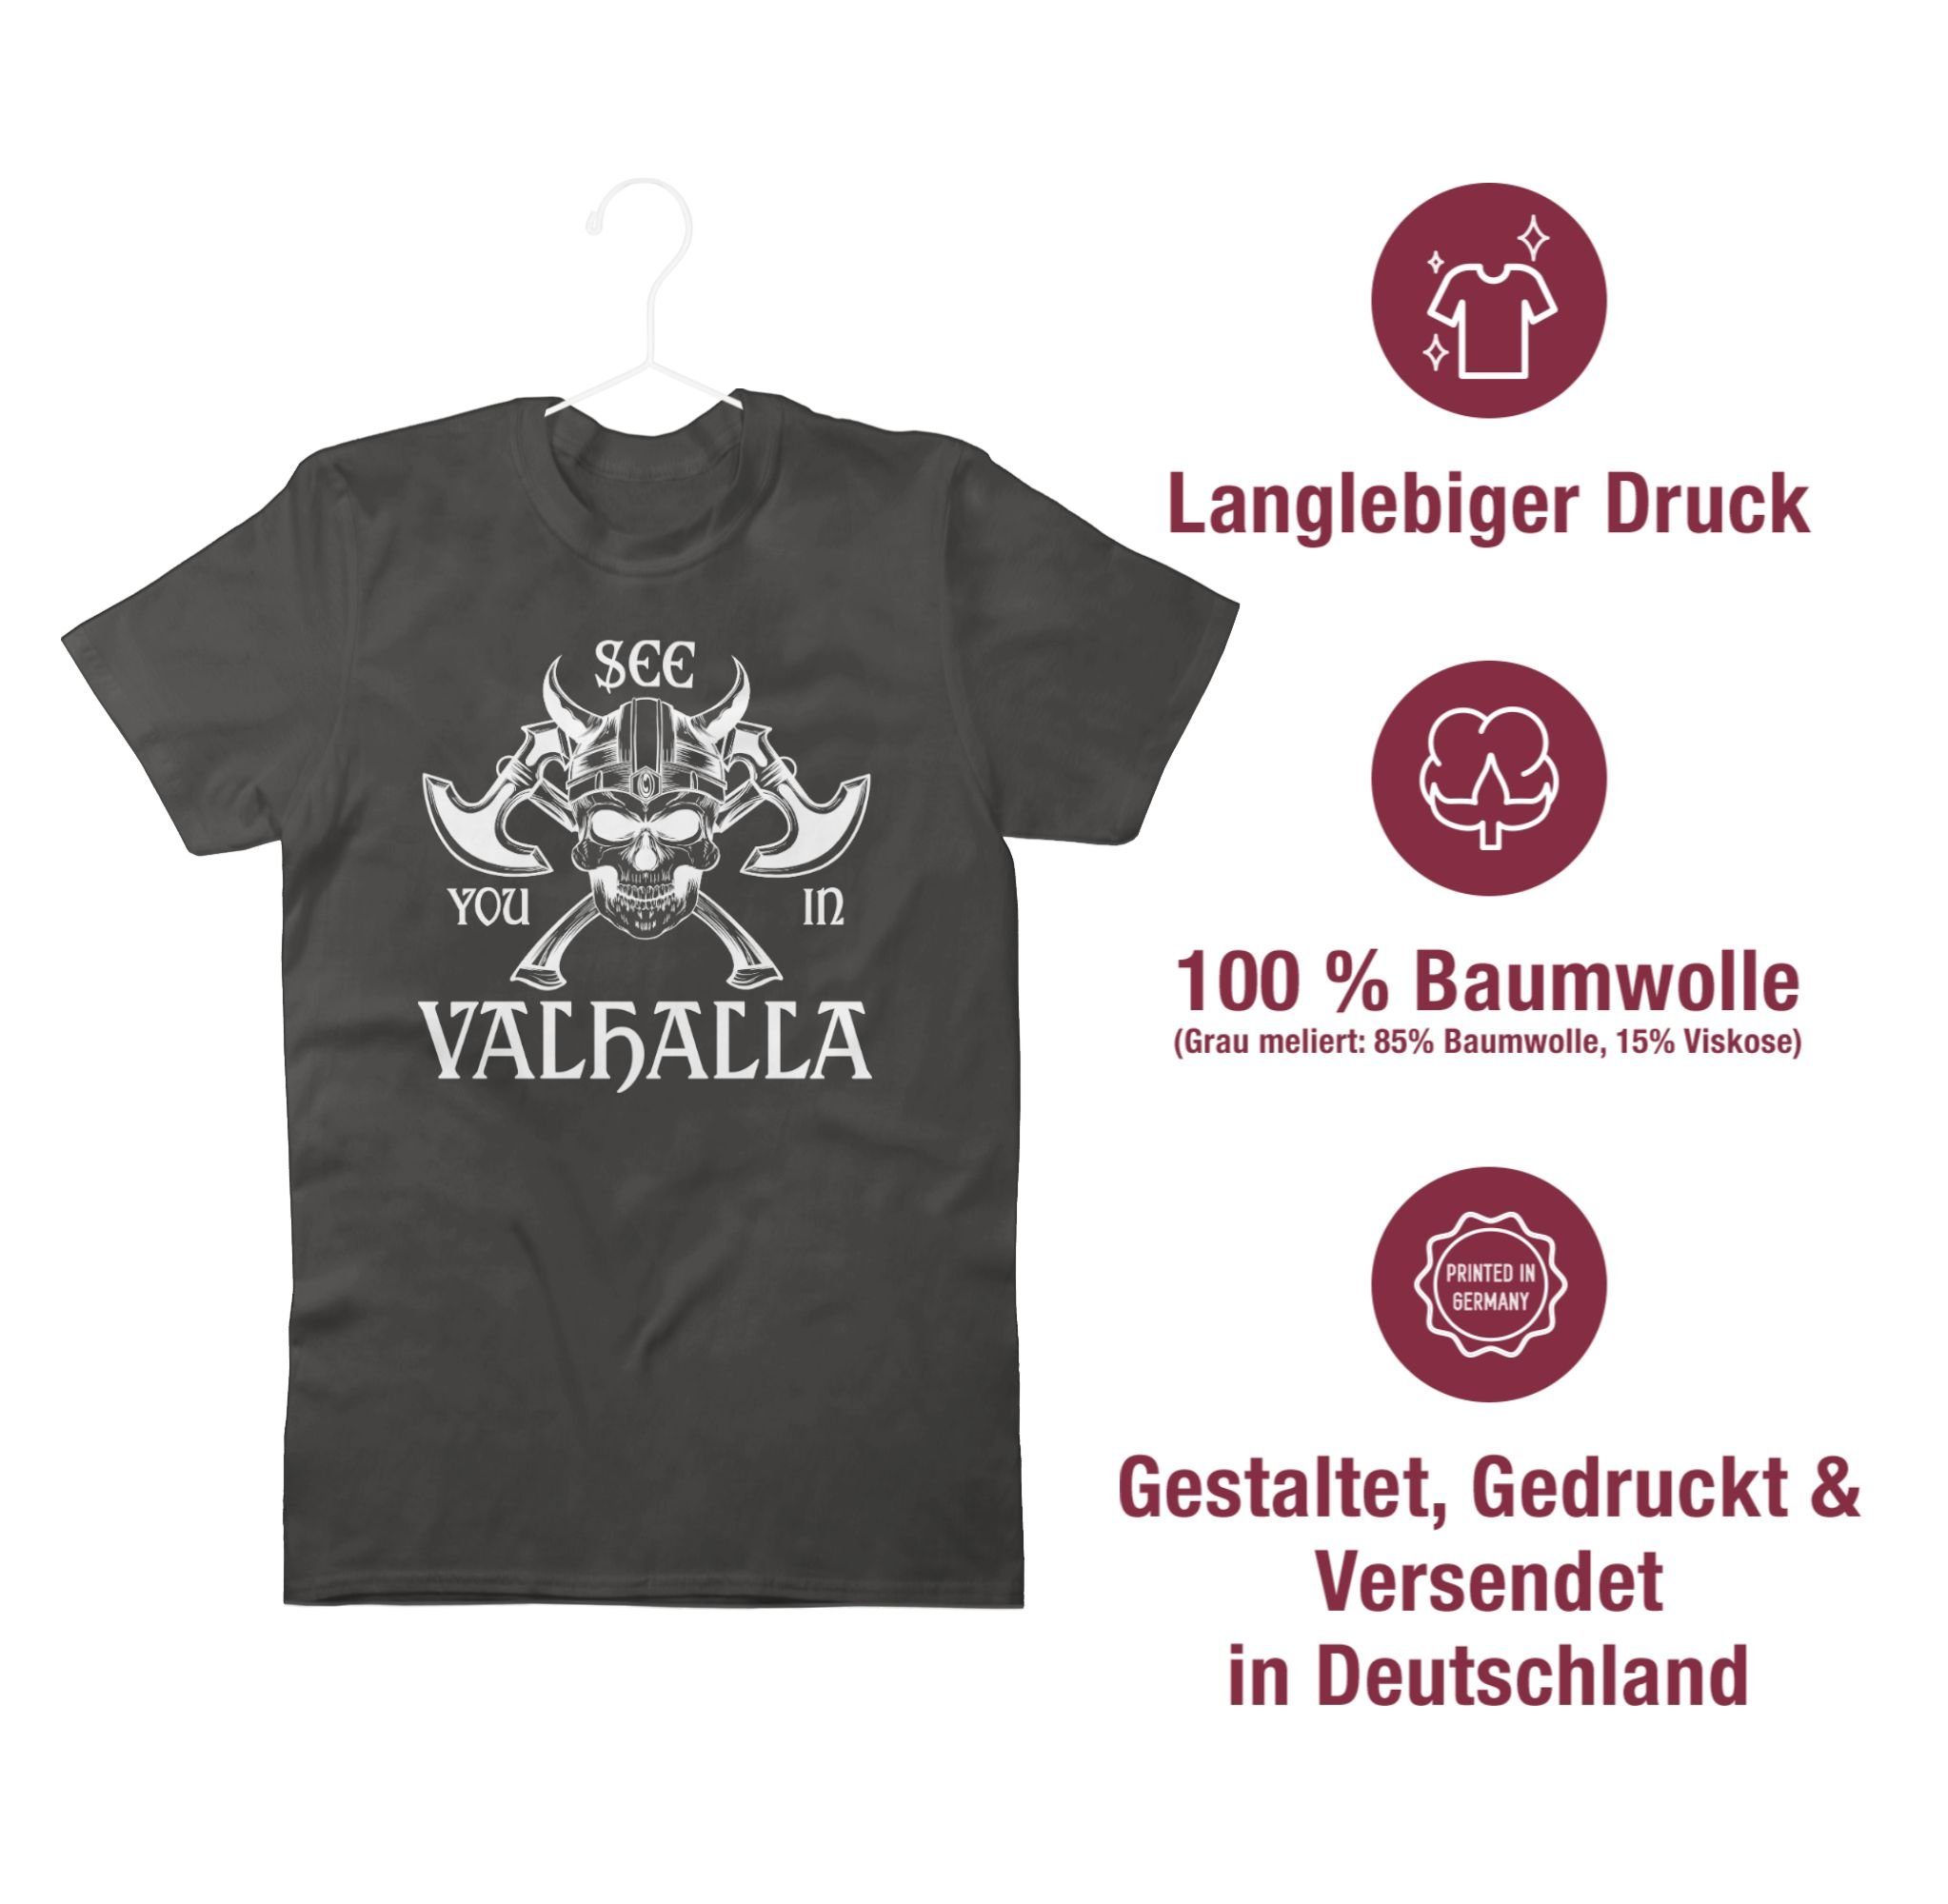 See Valhalla Wikinger & Shirtracer in 02 Herren you Dunkelgrau Walhalla T-Shirt